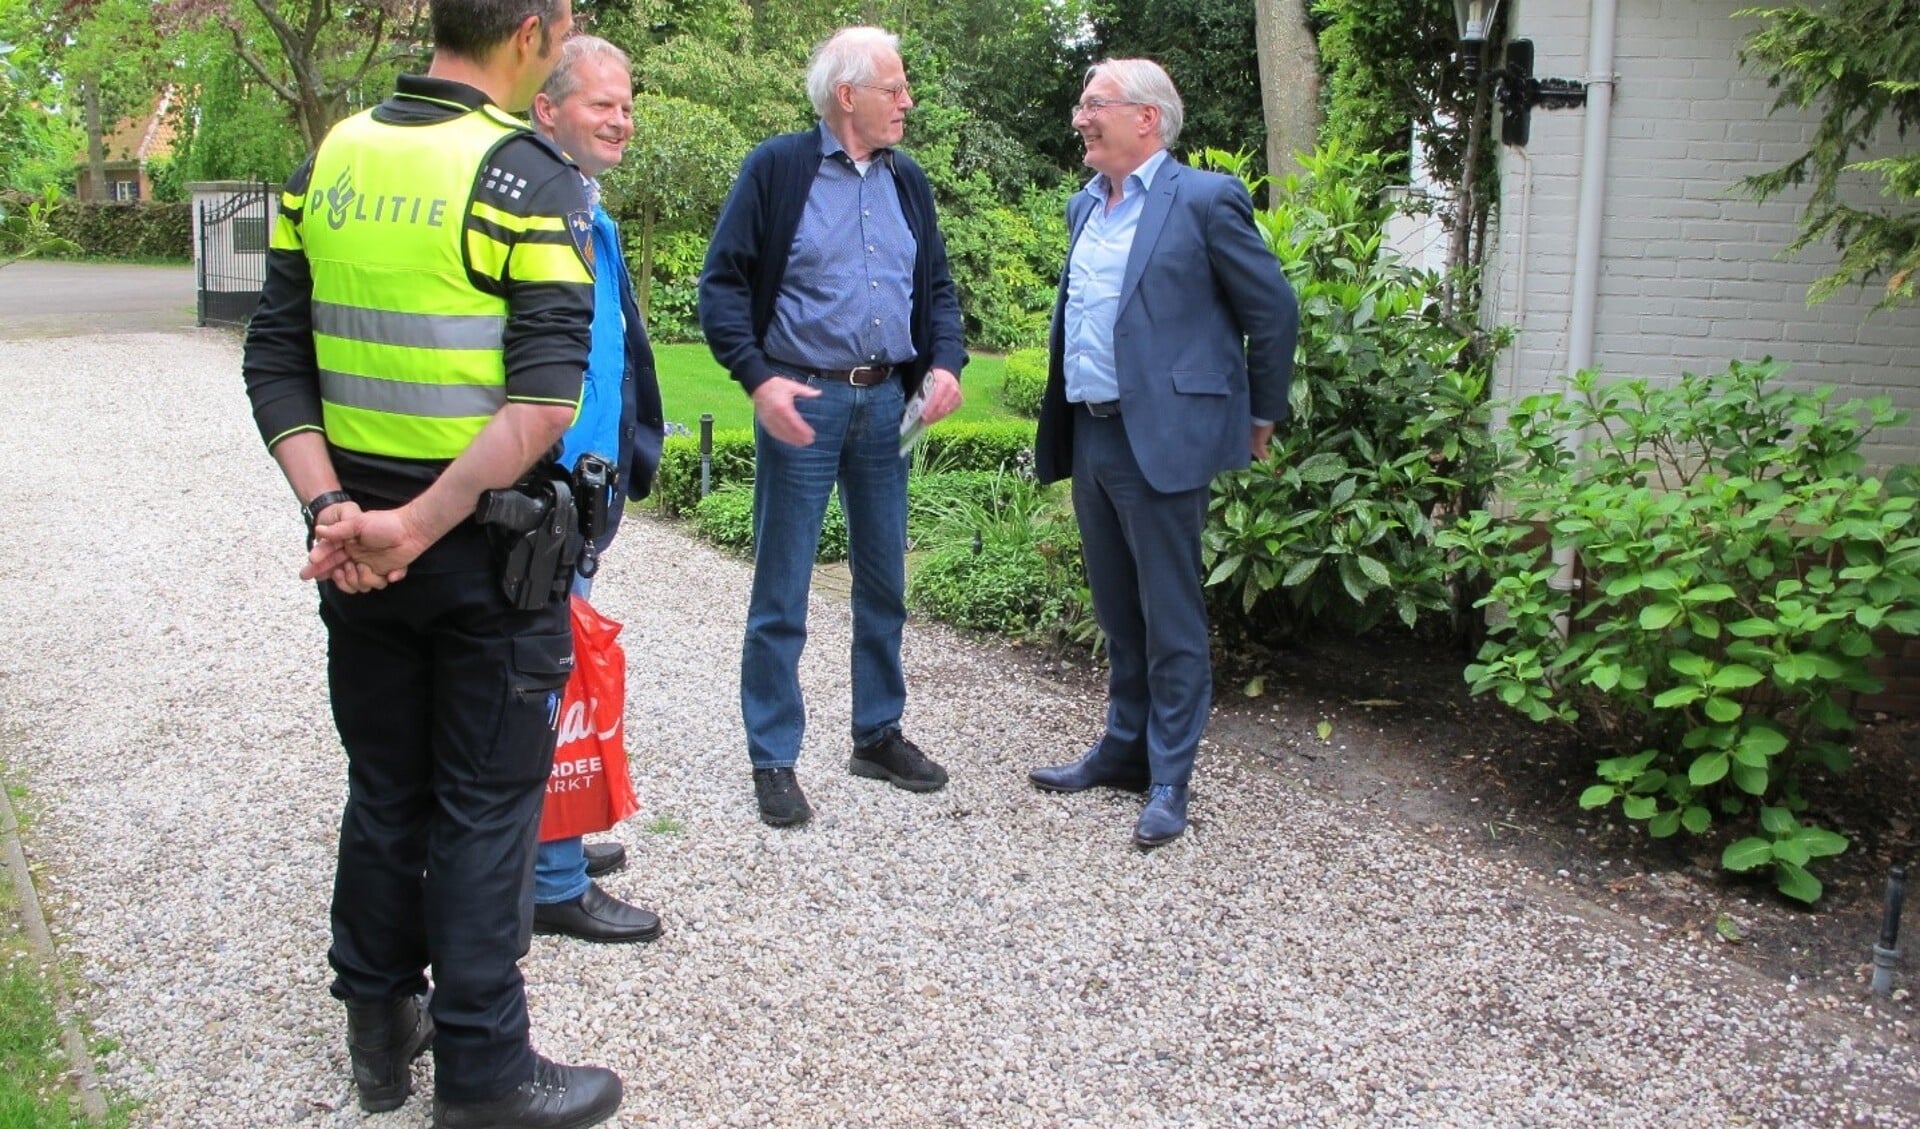 De deelnemers aan de schouw (o.a. Burgemeester Romeyn) in gesprek met een buurtbewoner. Bron: www.buurtpreventieheiloo.nl